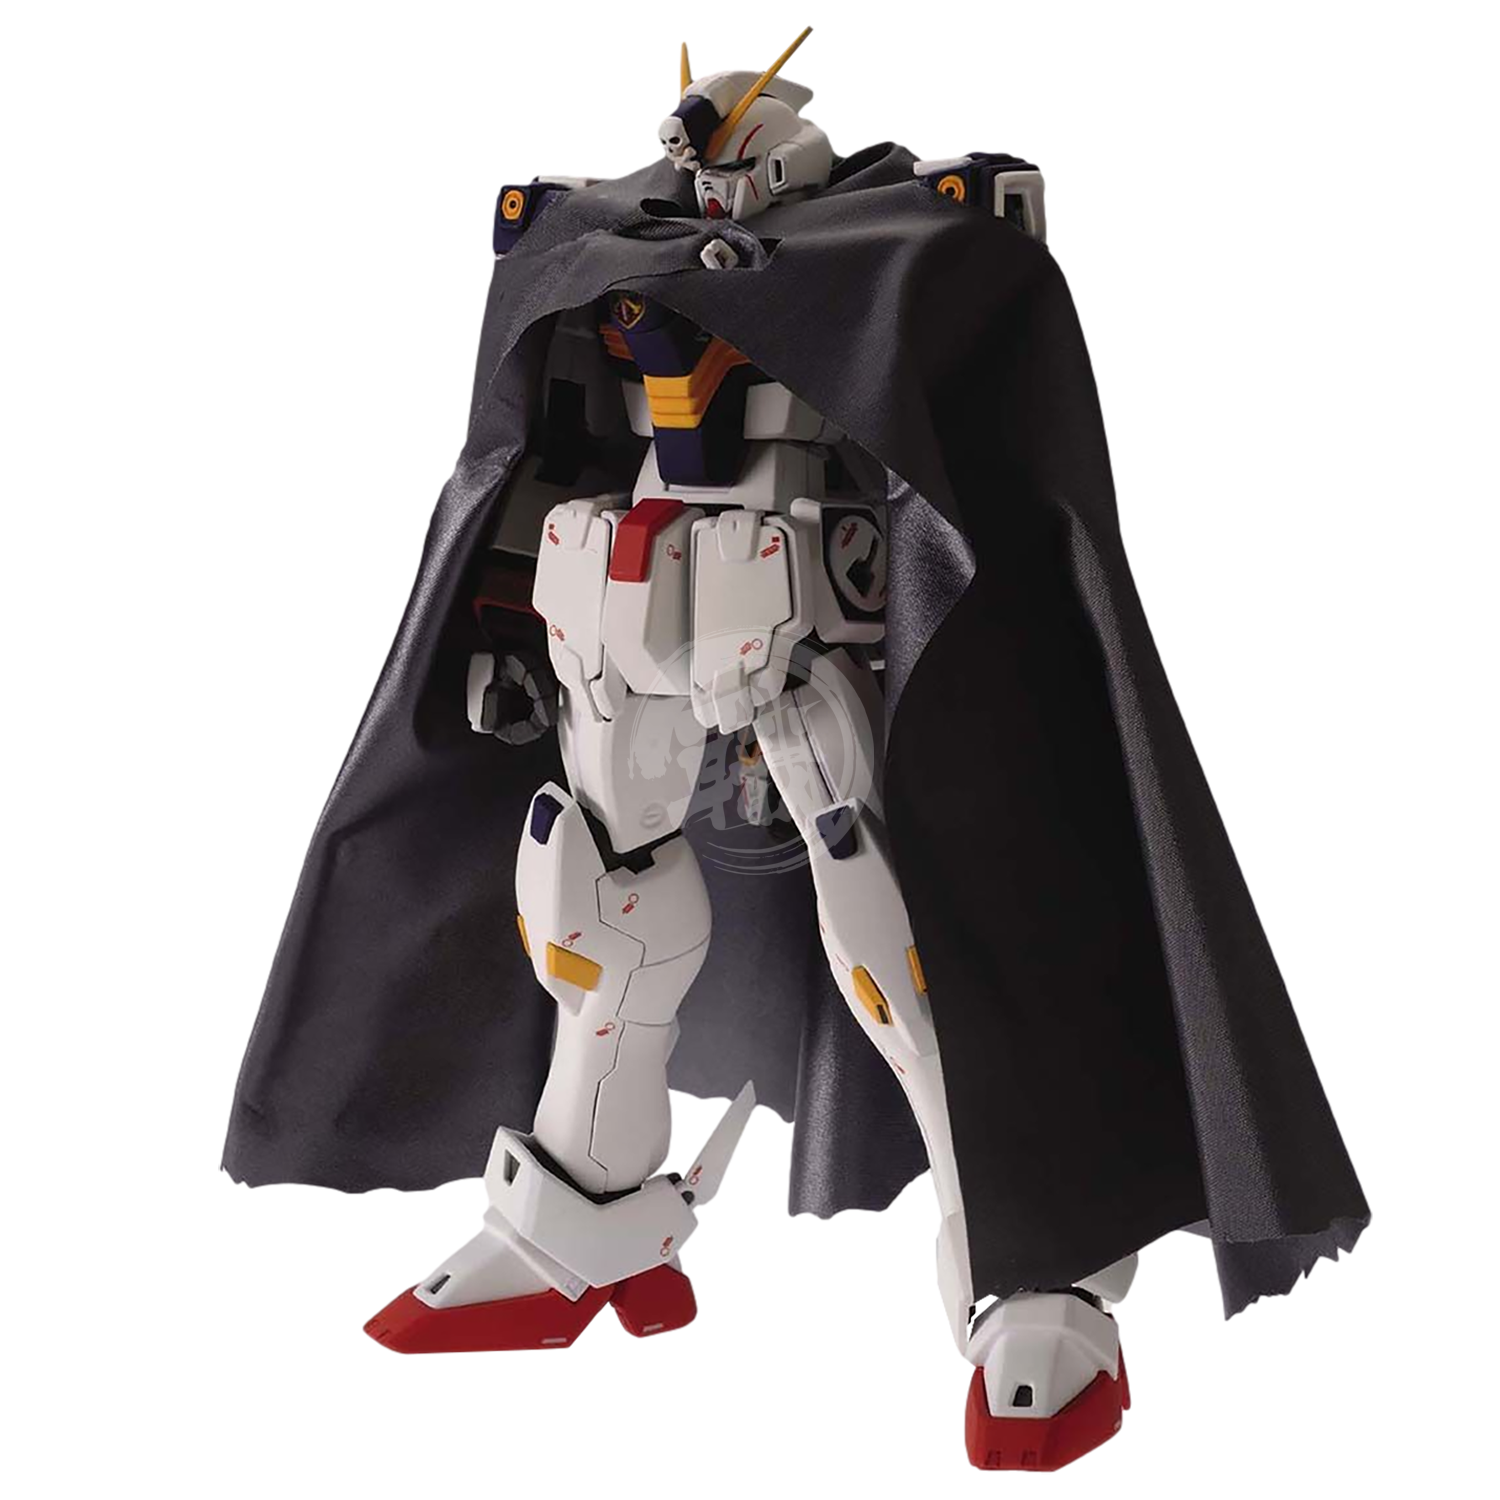 MG Crossbone Gundam X1 Ver.Ka - ShokuninGunpla